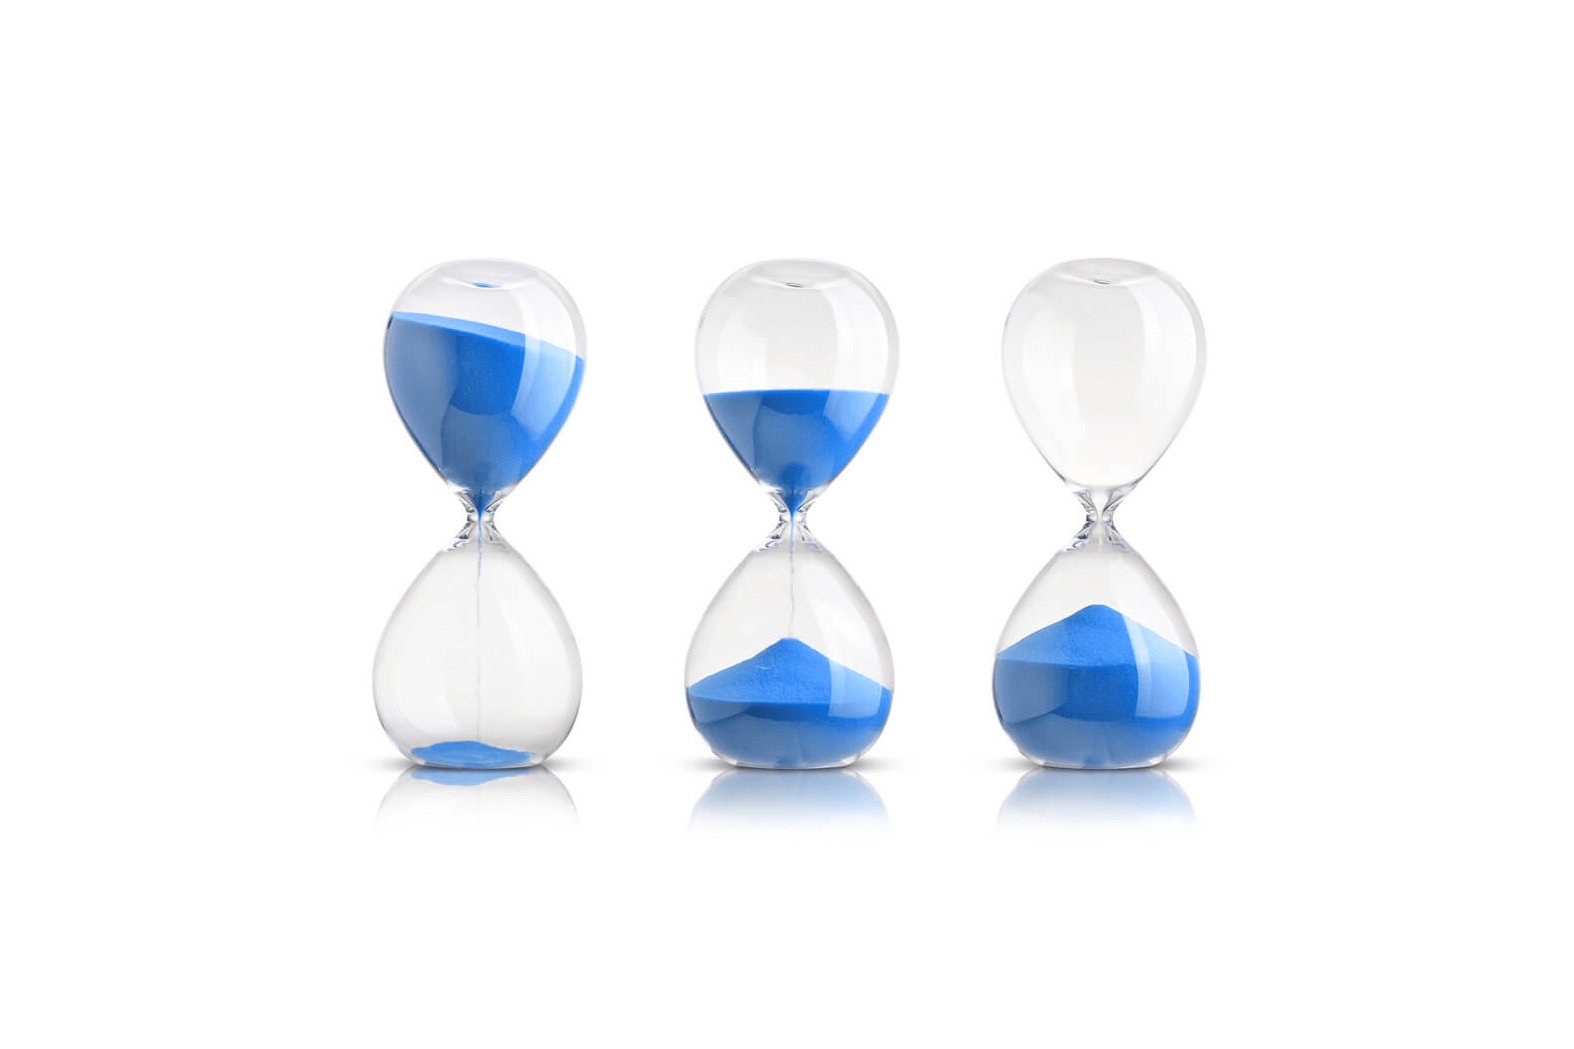 Hourglass clock